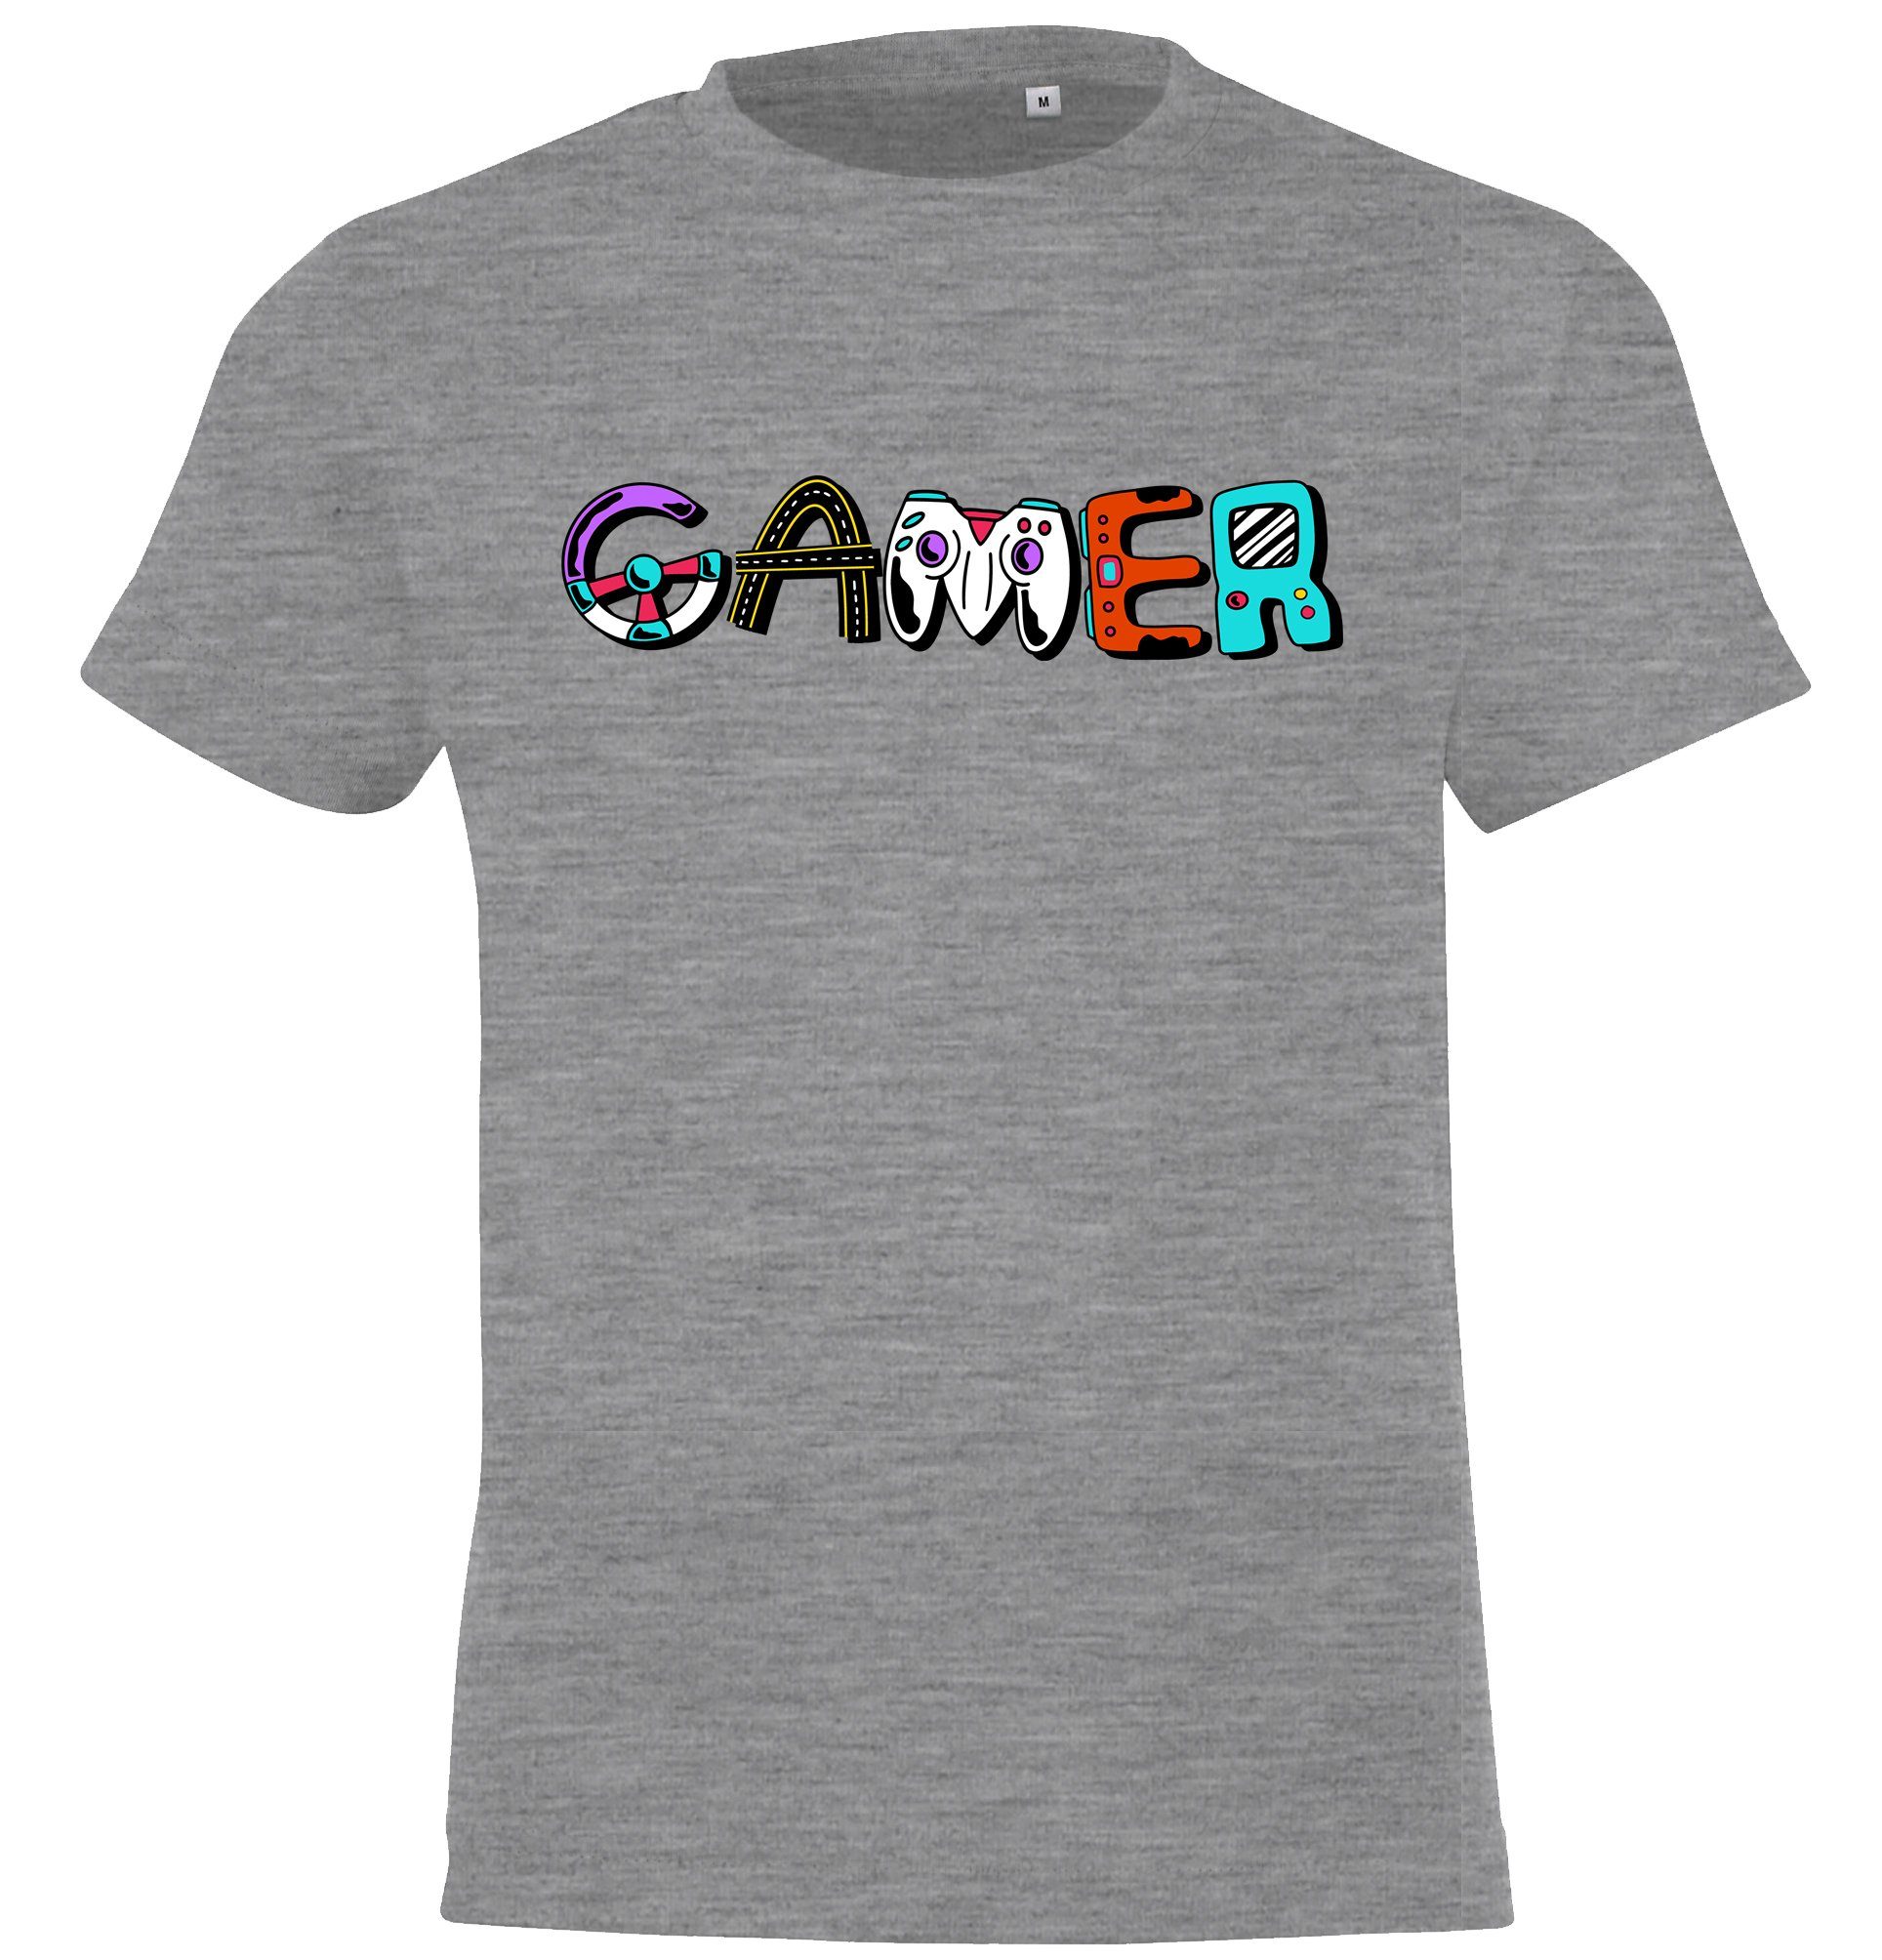 Youth Grau trendigem Frontprint Designz Mädchen T-Shirt für und Gamer Kinder mit Jungen Shirt